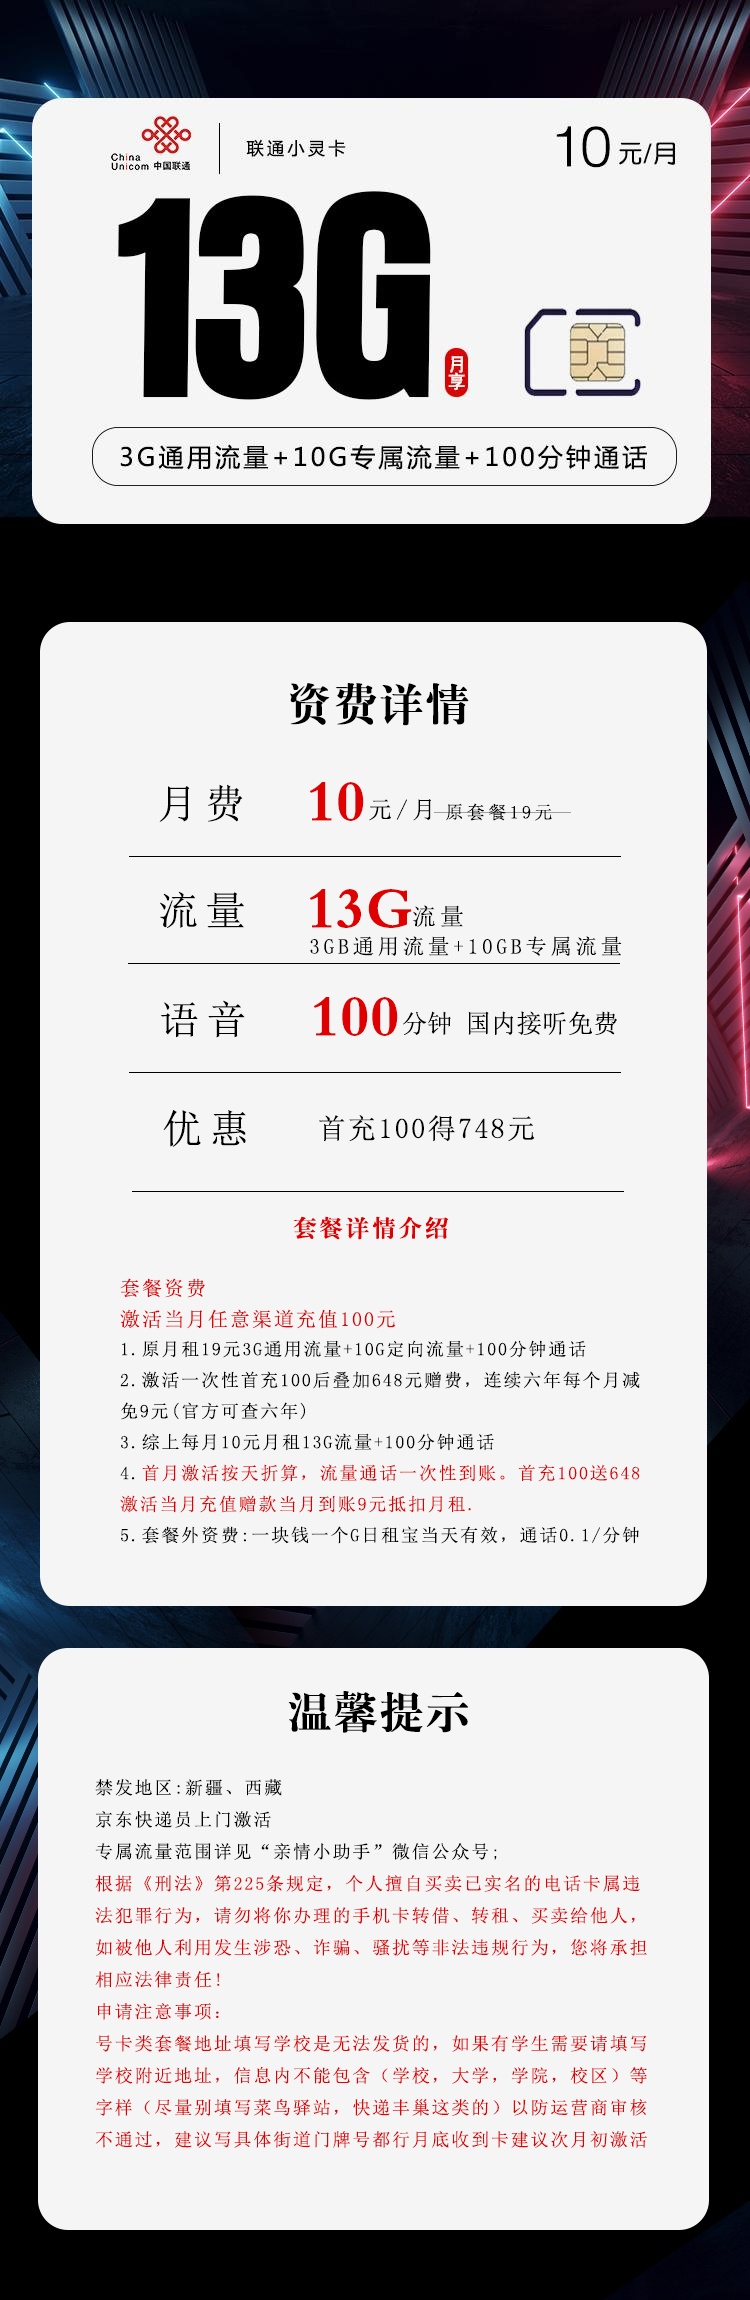 【6年】联通小灵卡10元月租包3G通用流量+10G定向流量+100分钟+亲情守护功能